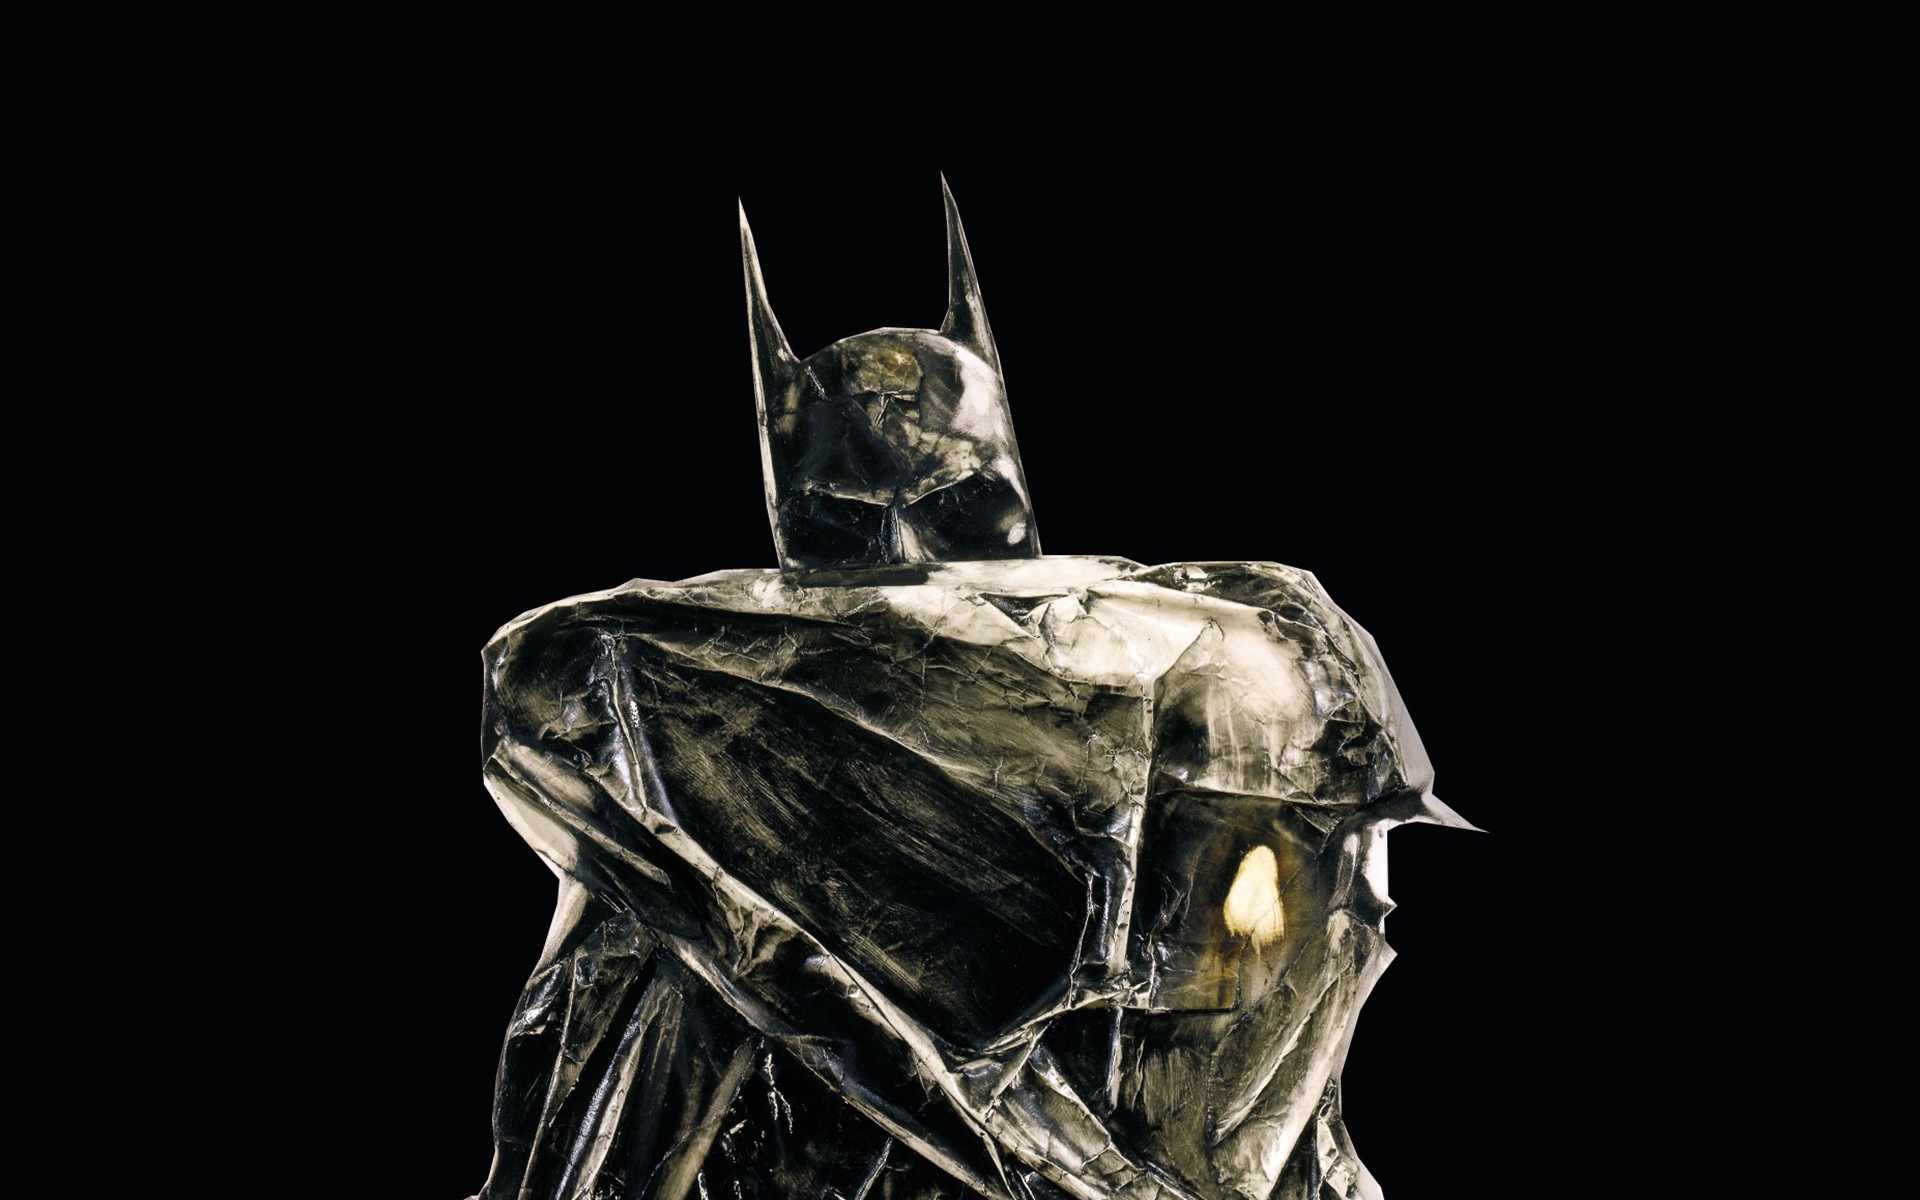 Iron Batman for 1920 x 1200 widescreen resolution